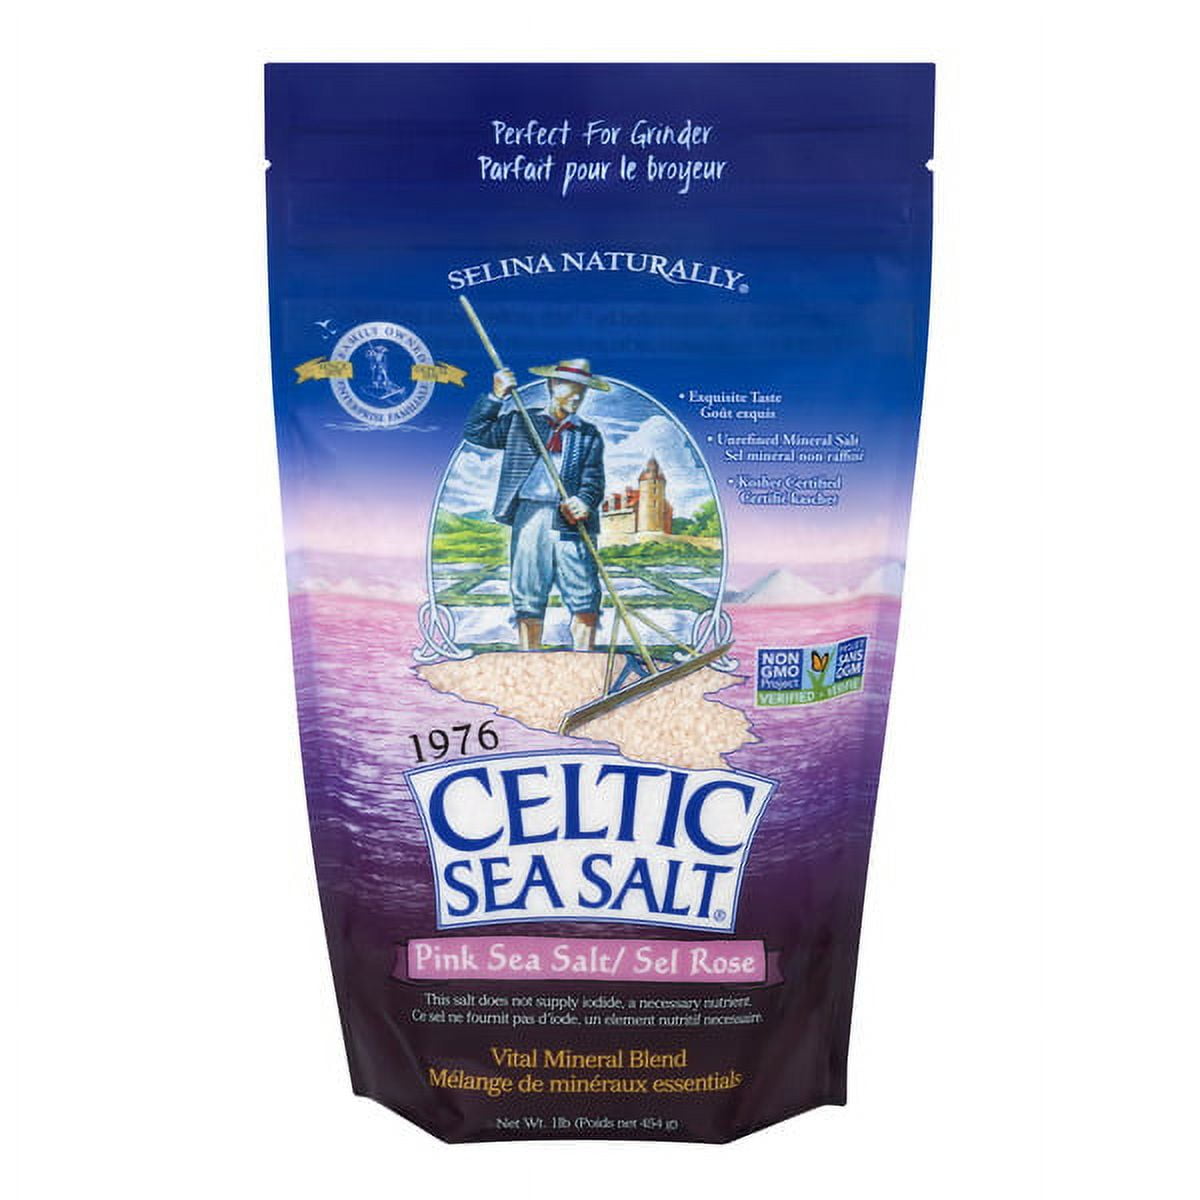 Celtique Salt: Fleur De Sel Celtic Salt For Hydration (16oz Resealable Bag)